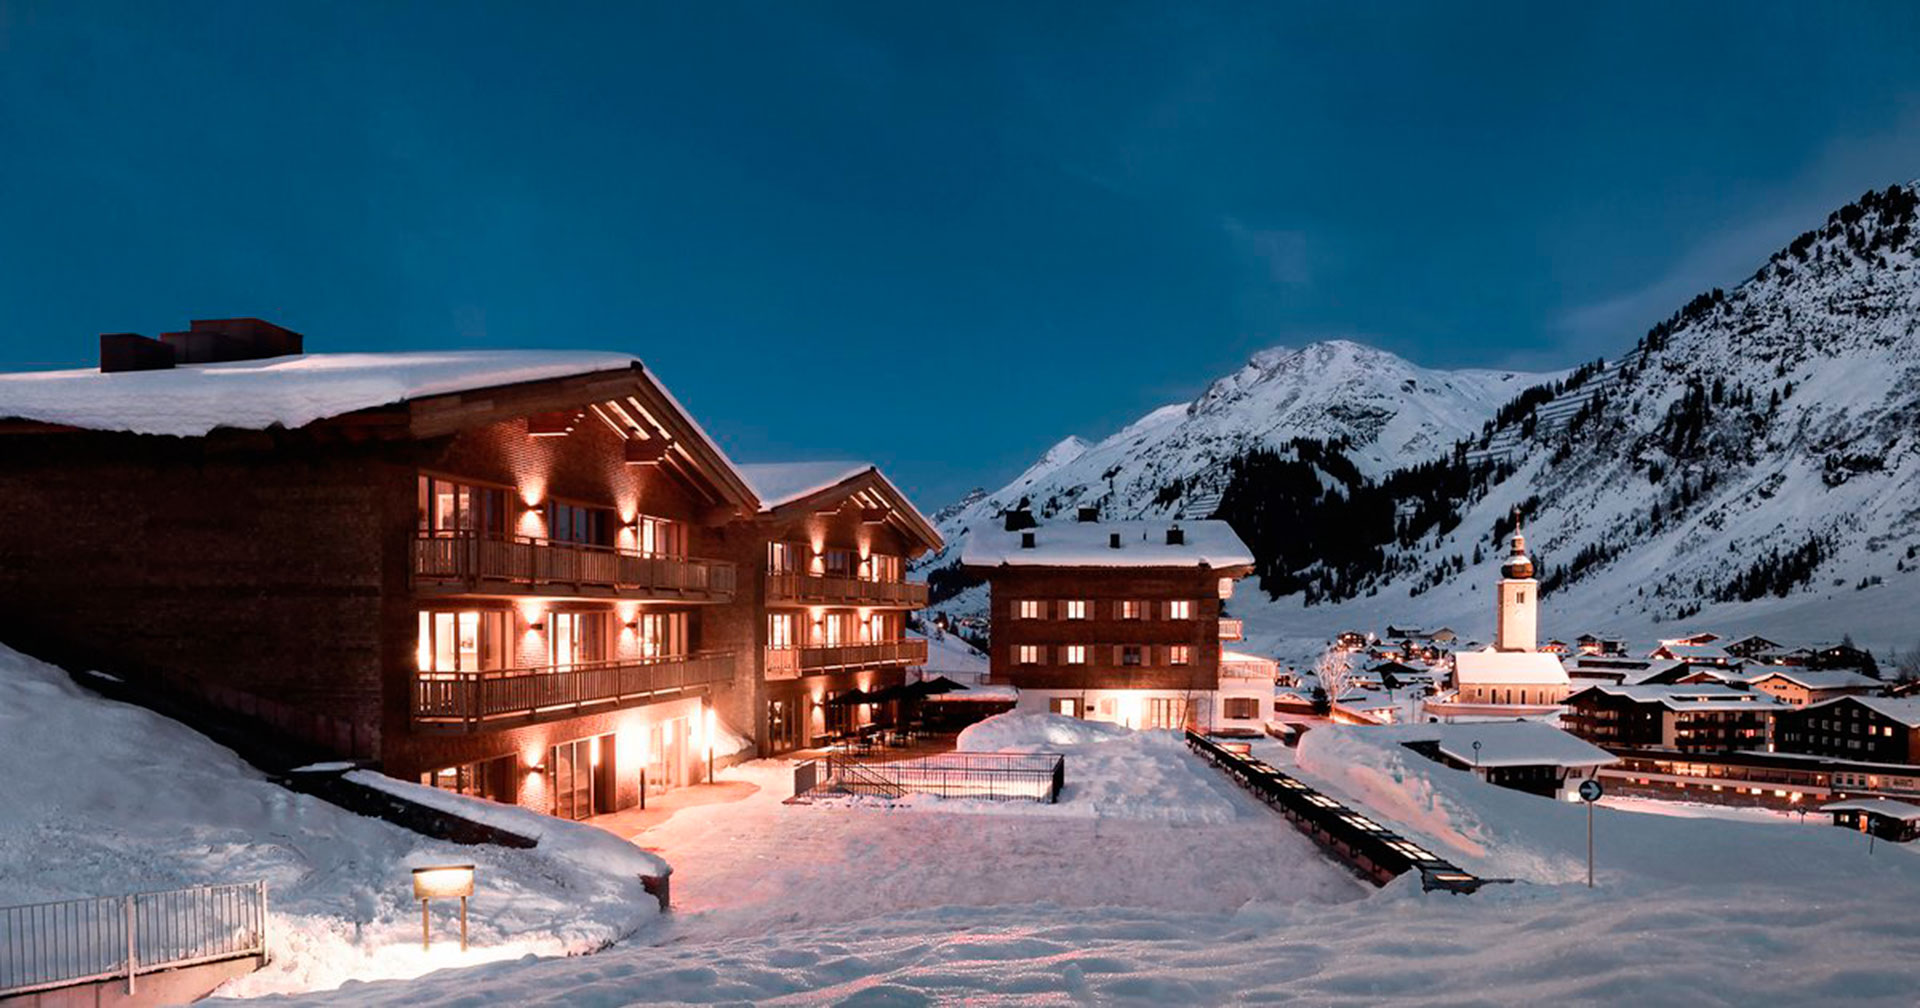 El hotel de esquí Aurelio Lech en los Alpes austríacos, del que Deripaska era dueño